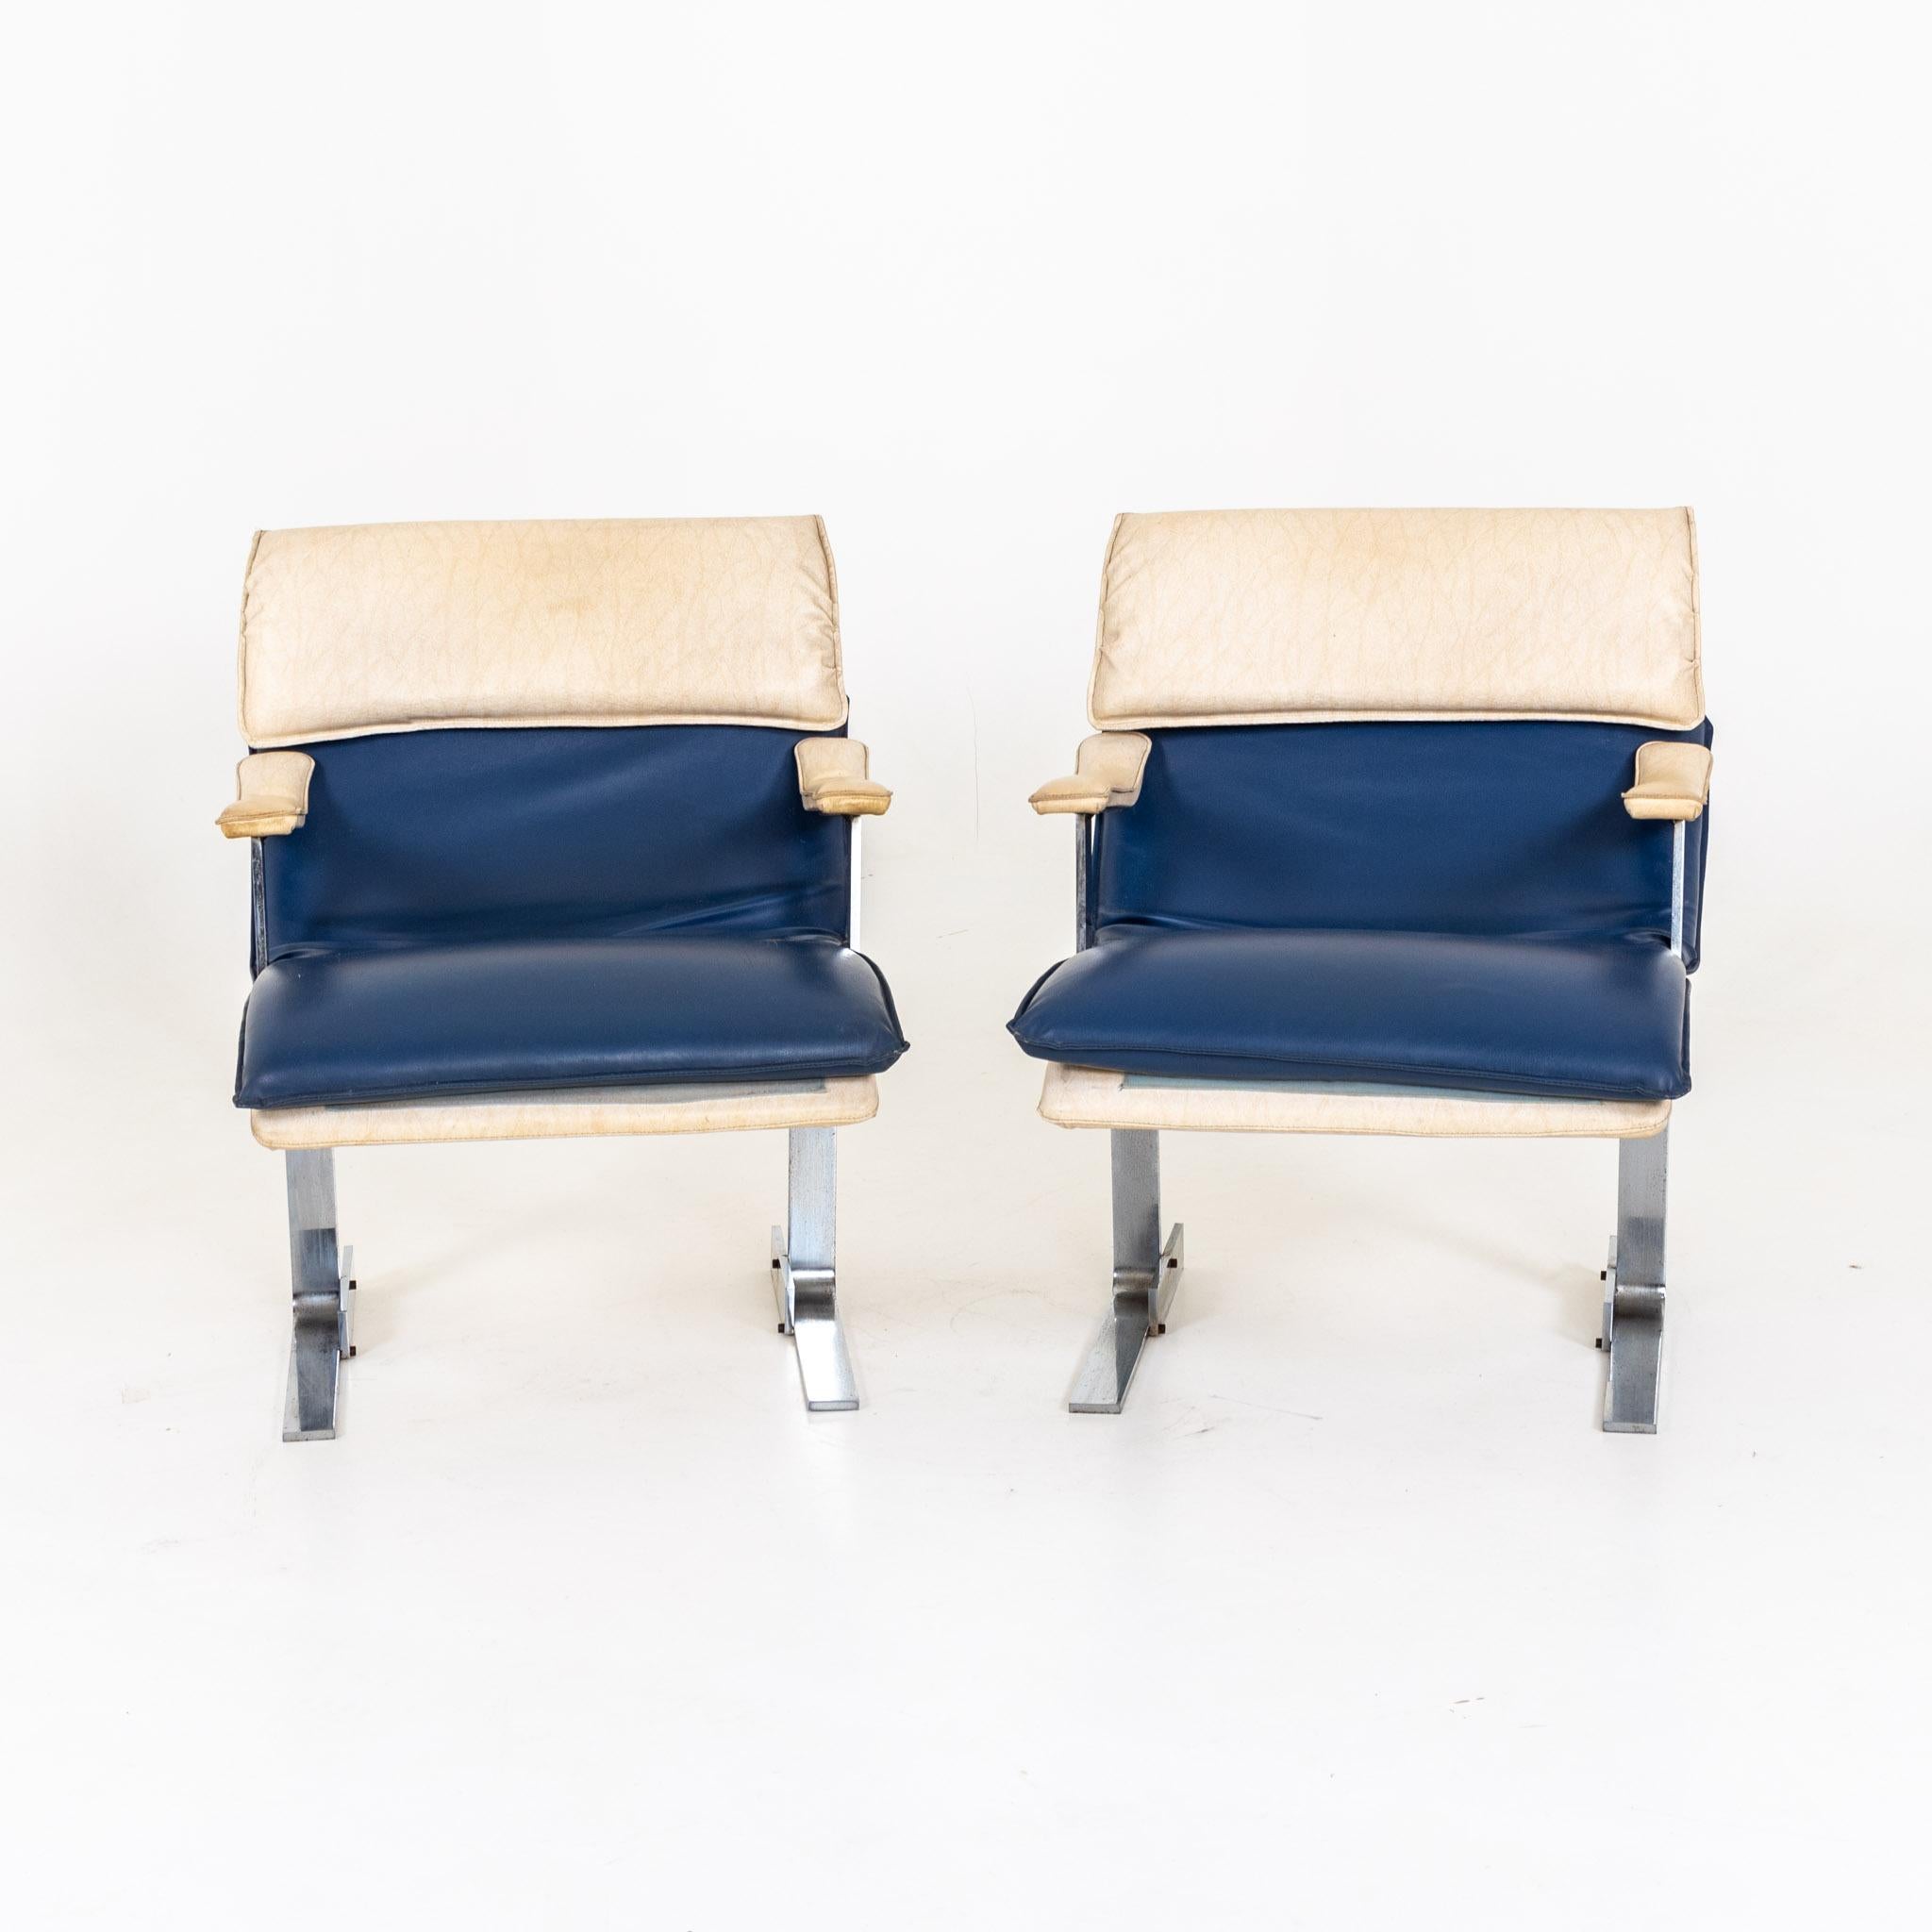 Sessel mit Lederbezug in Blau und Beige auf Metallgestell. Alters- und Gebrauchsspuren.